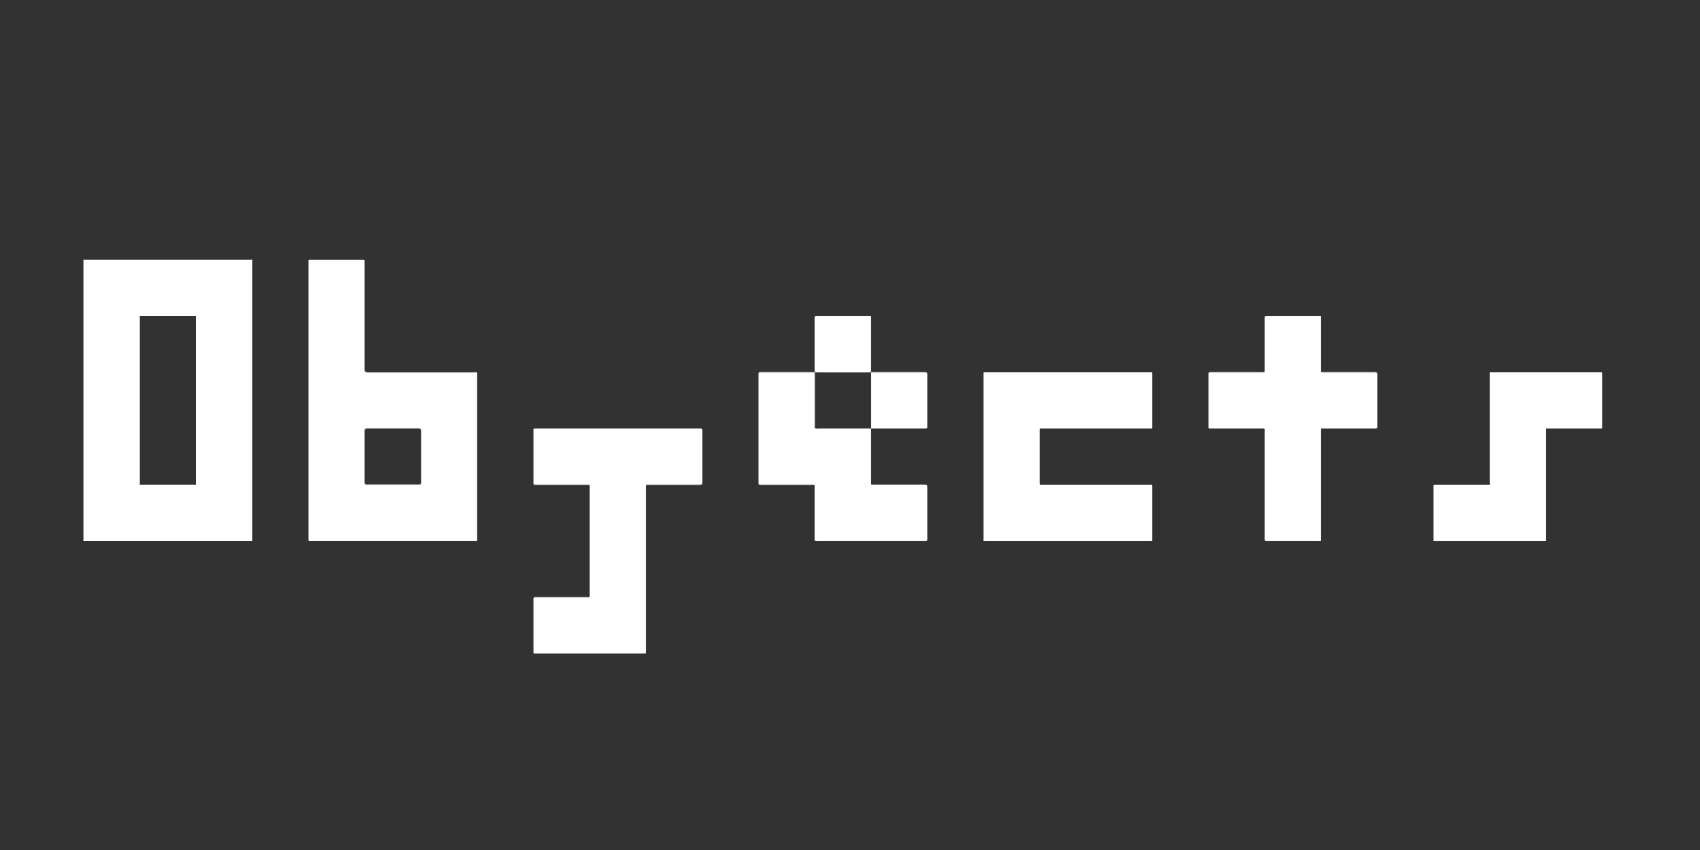 JavaScript Objects - Week 08